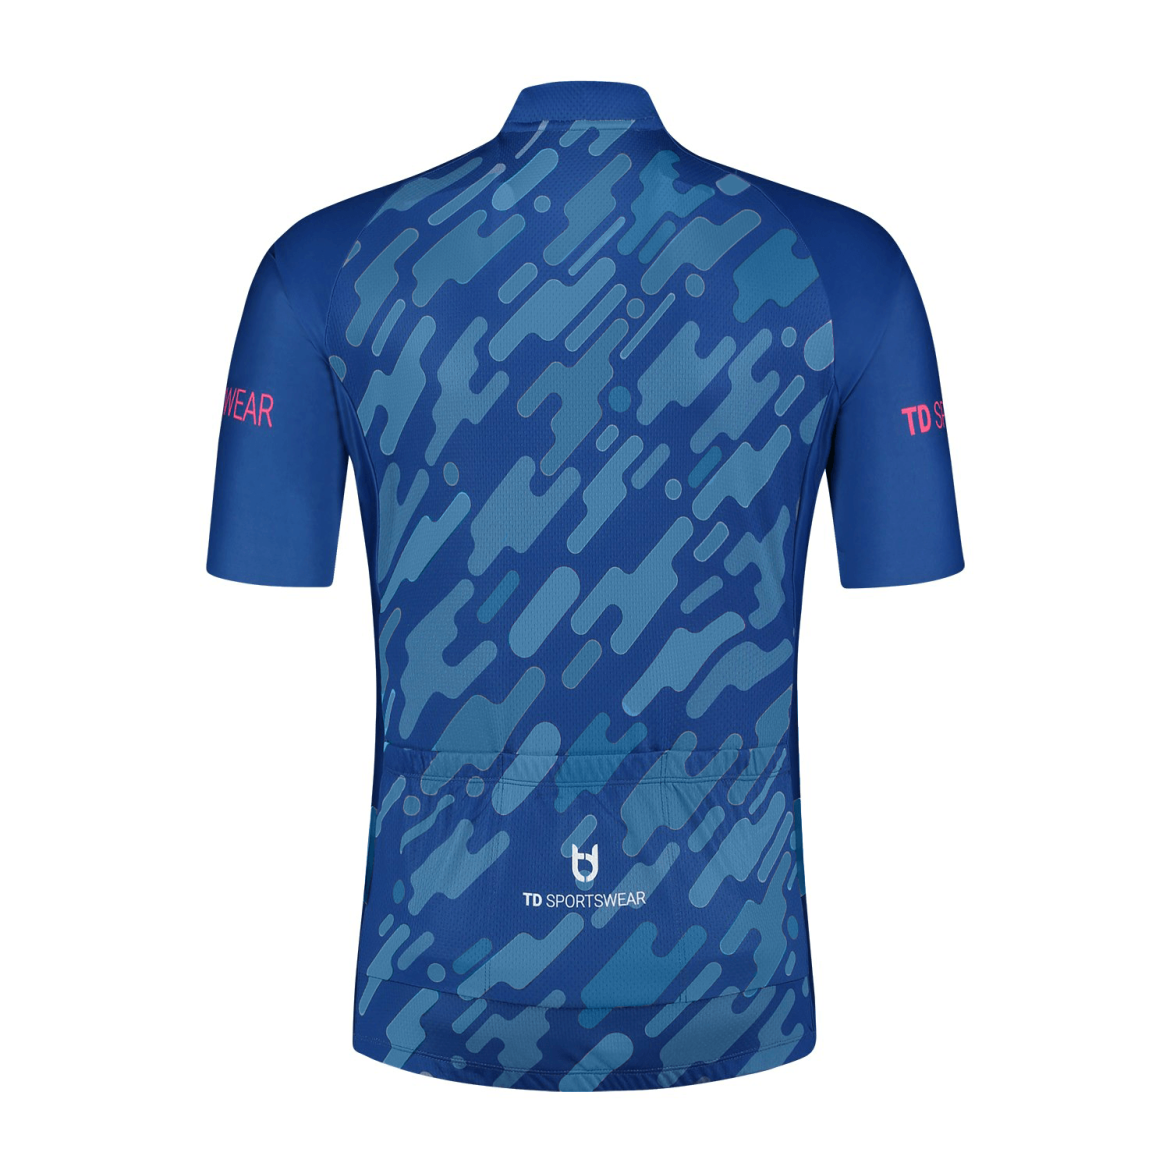 Pro 300 custom cycling jersey back TD sportswear